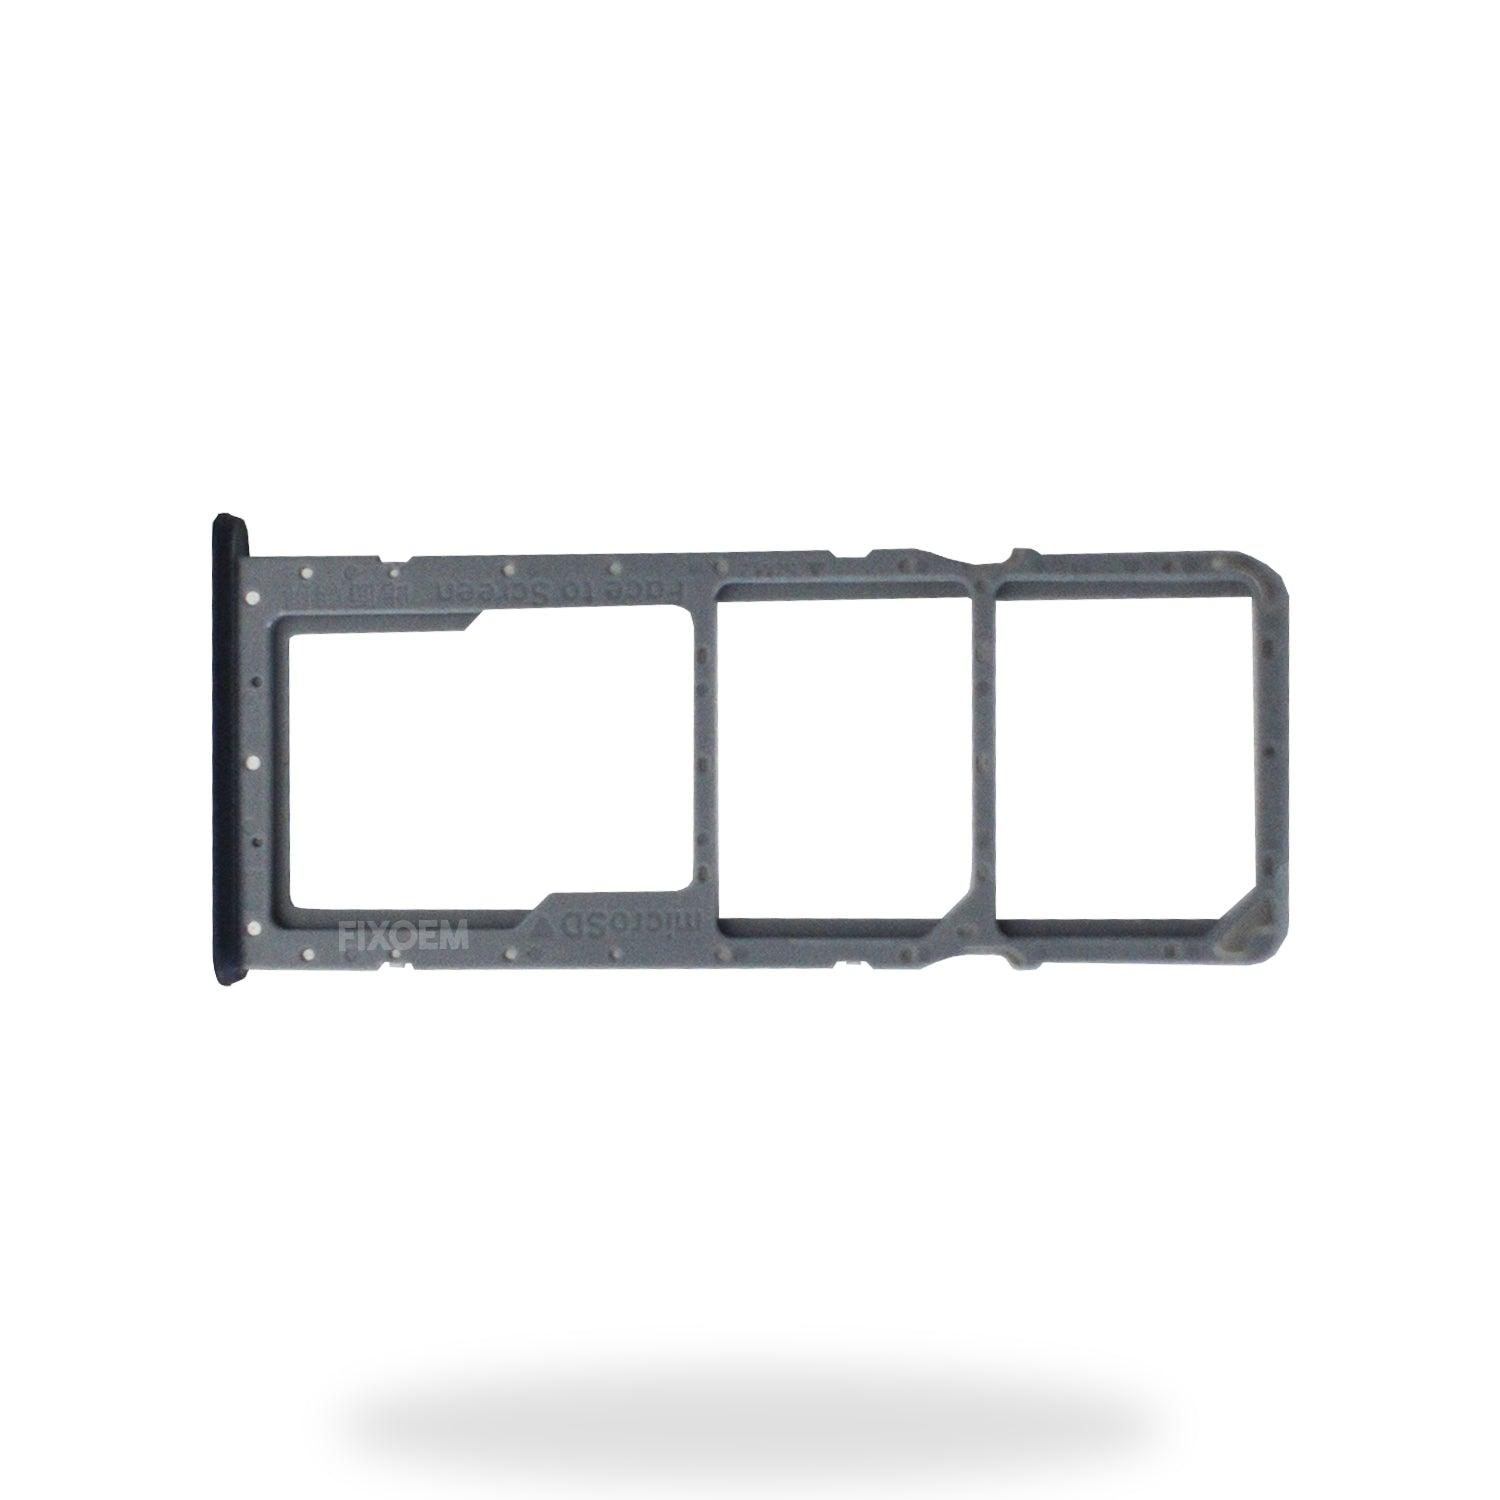 Charola Sim Oppo A77 a solo $ 30.00 Refaccion y puestos celulares, refurbish y microelectronica.- FixOEM